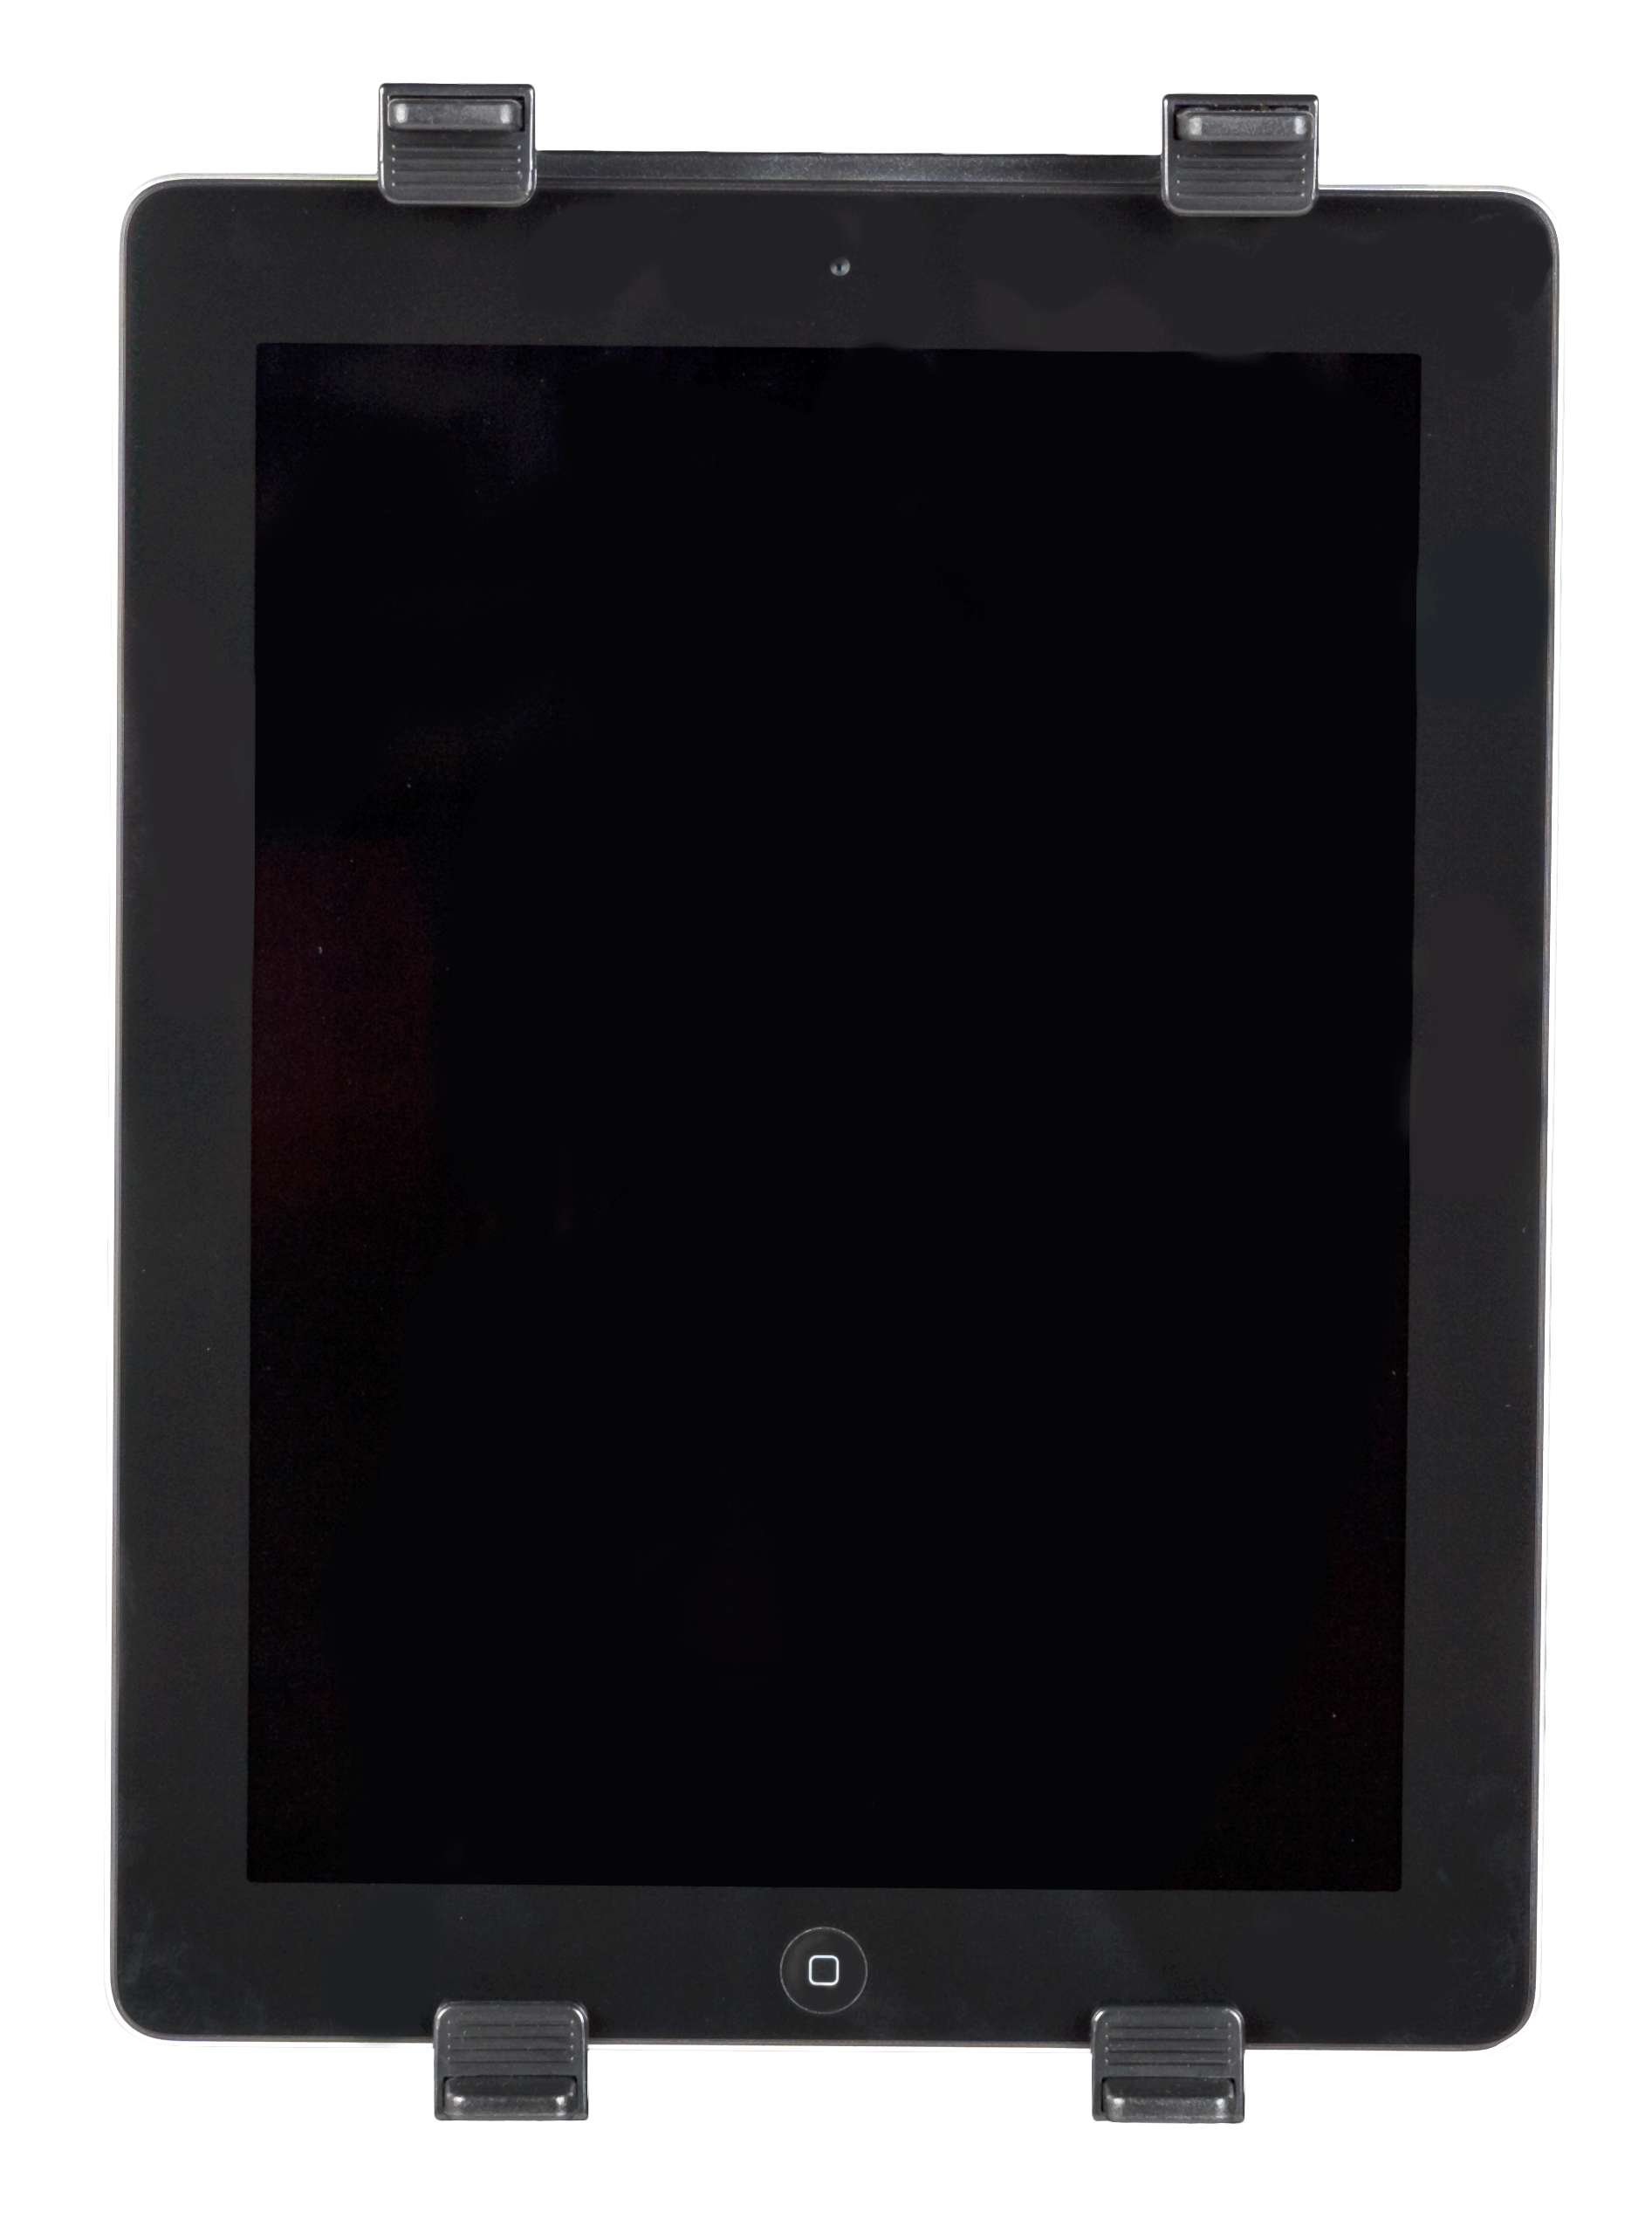 Premium PKW Tablet Halterung mit Saugnapf passend bis 10 Zoll Tablets